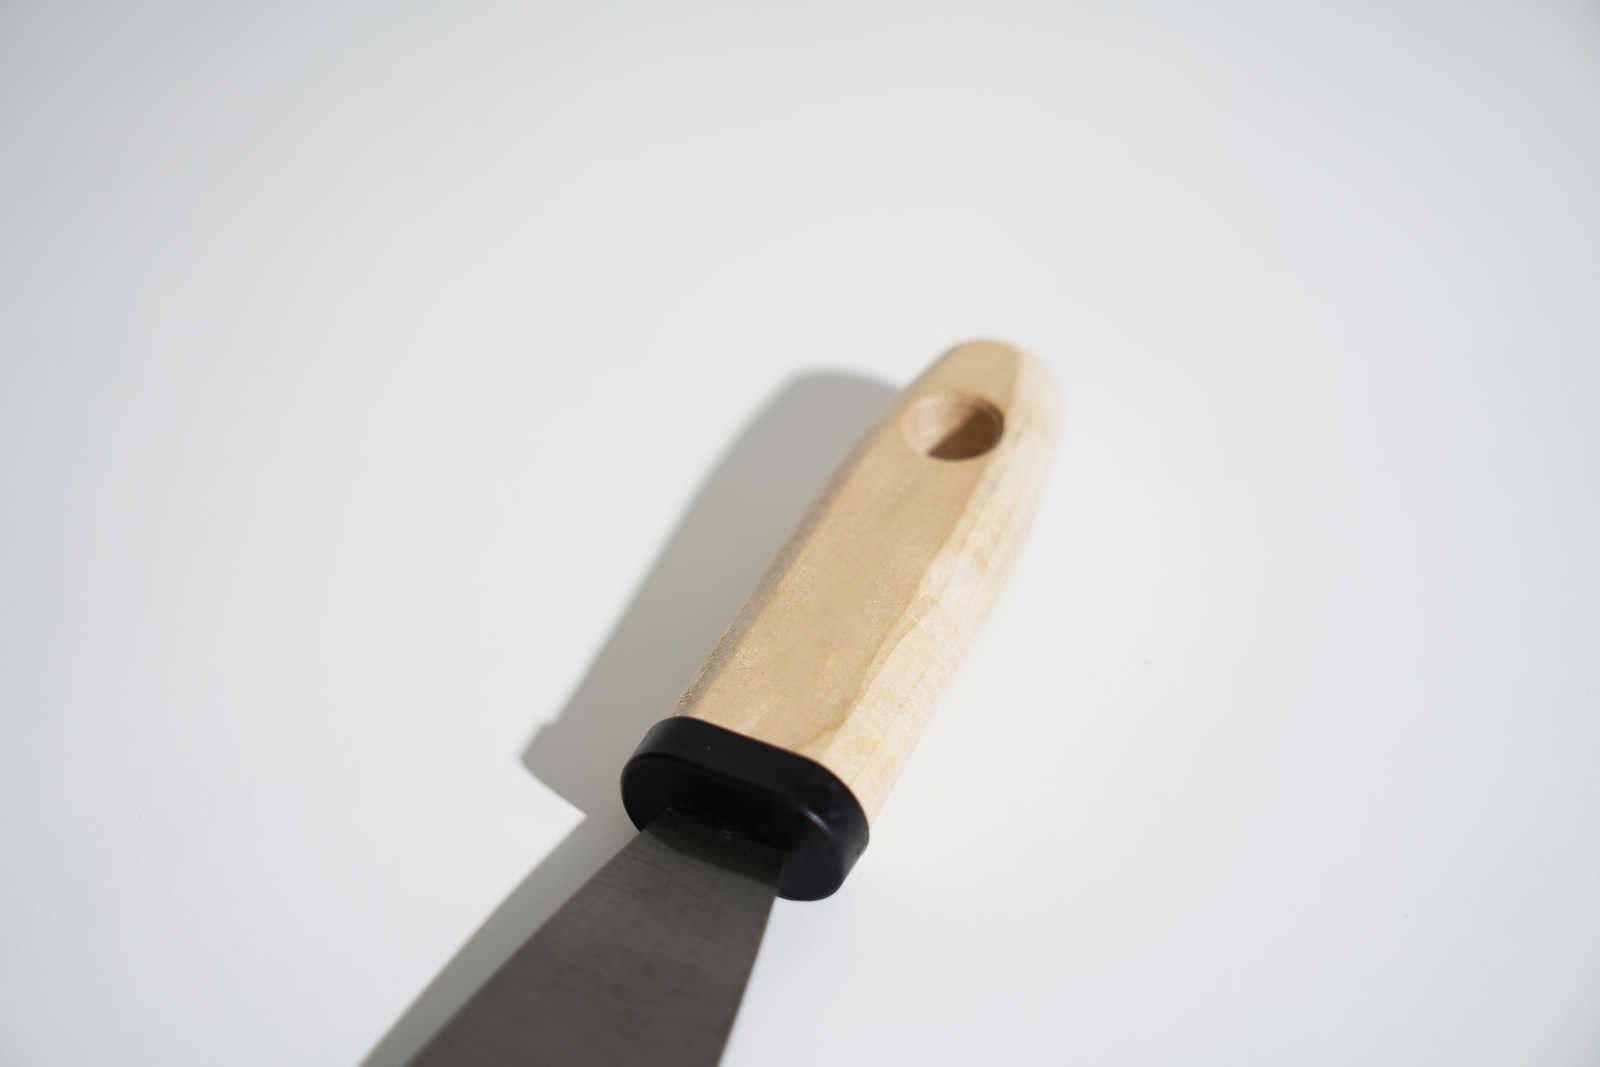             Spatule de peintre 40mm avec lame en acier flexible & manche en bois
        